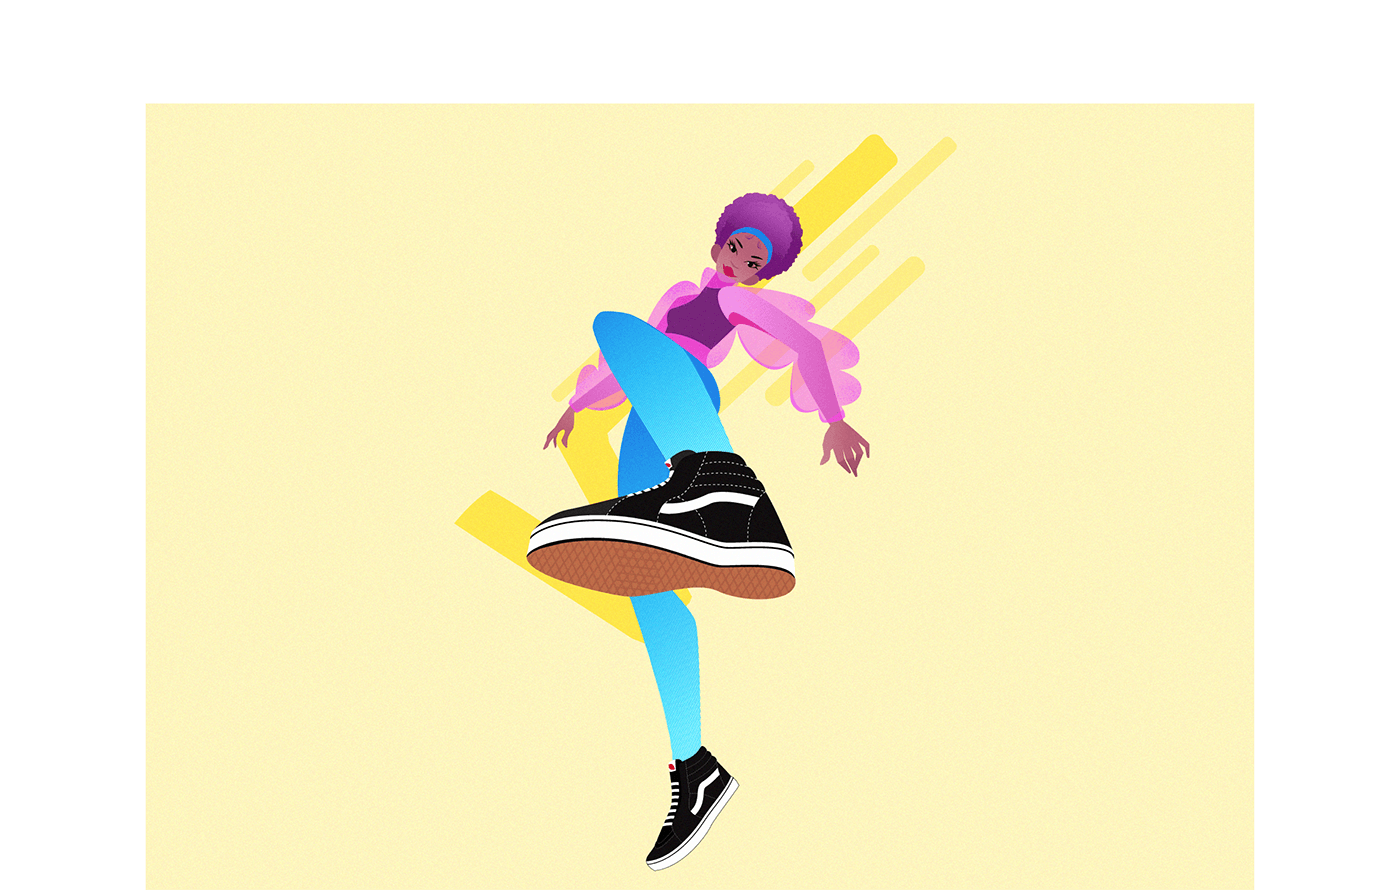 Иллюстрация персонажа в спортивной обуви